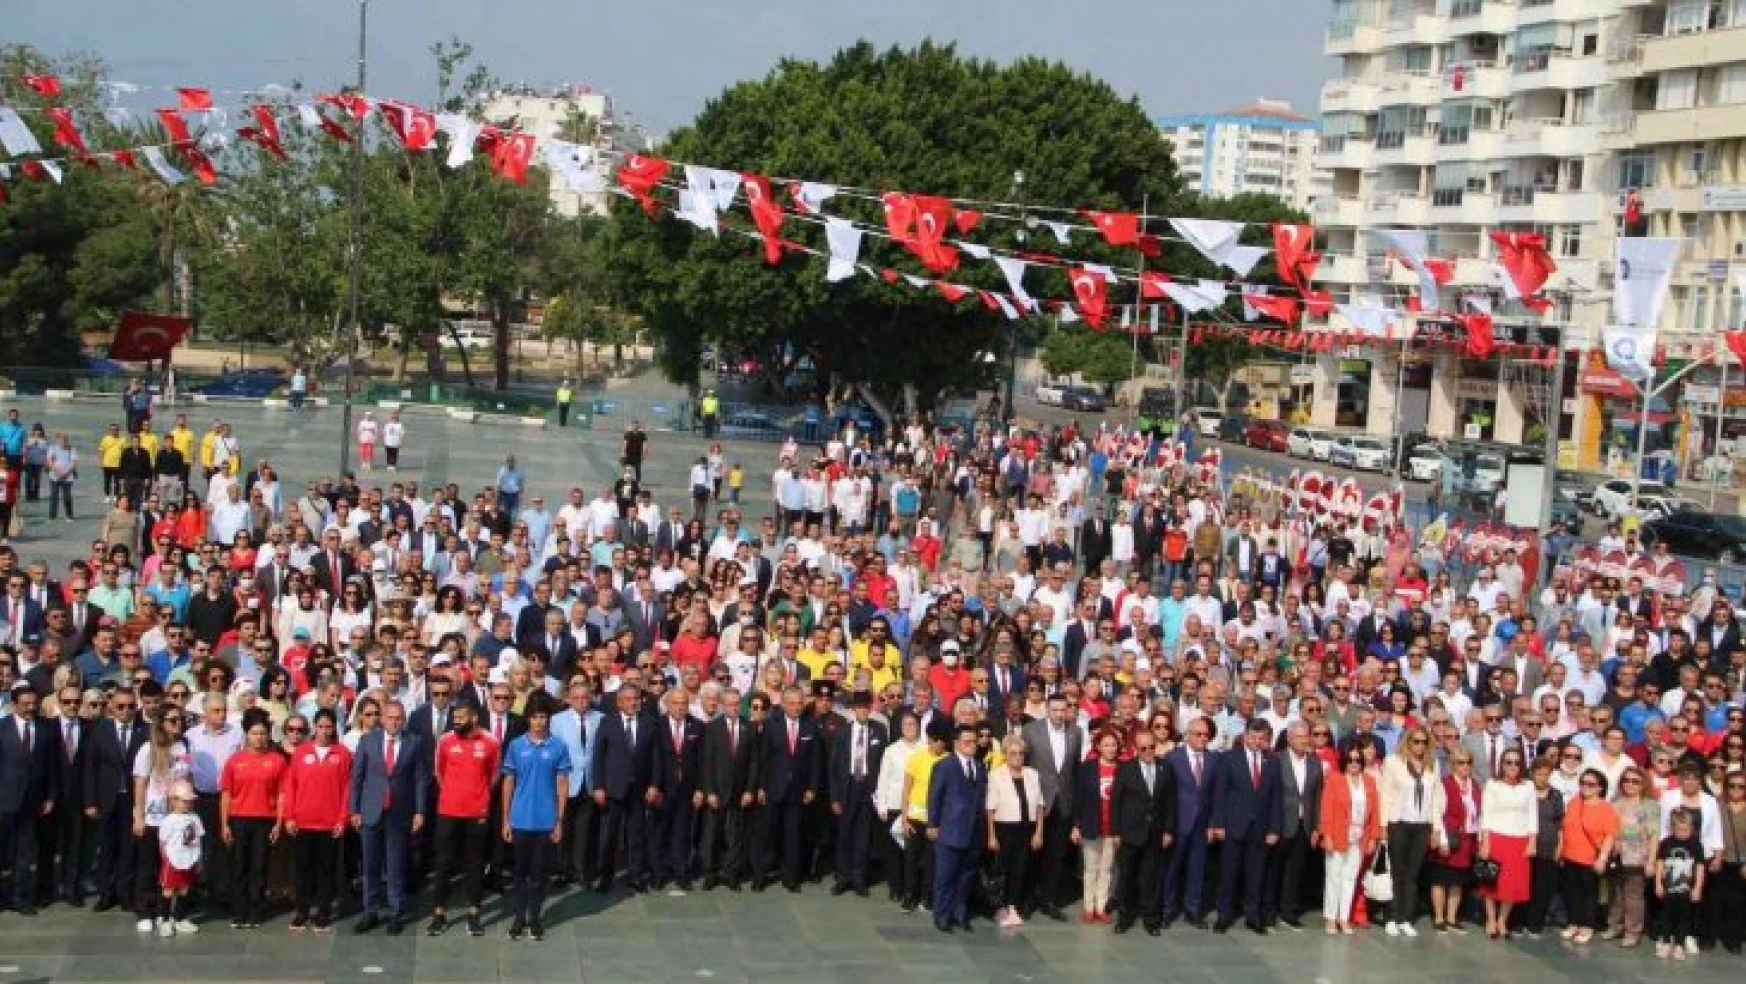 Antalya'da '19 Mayıs' etkinlikleri Atatürk Anıtı'na çelenk sunumuyla başladı